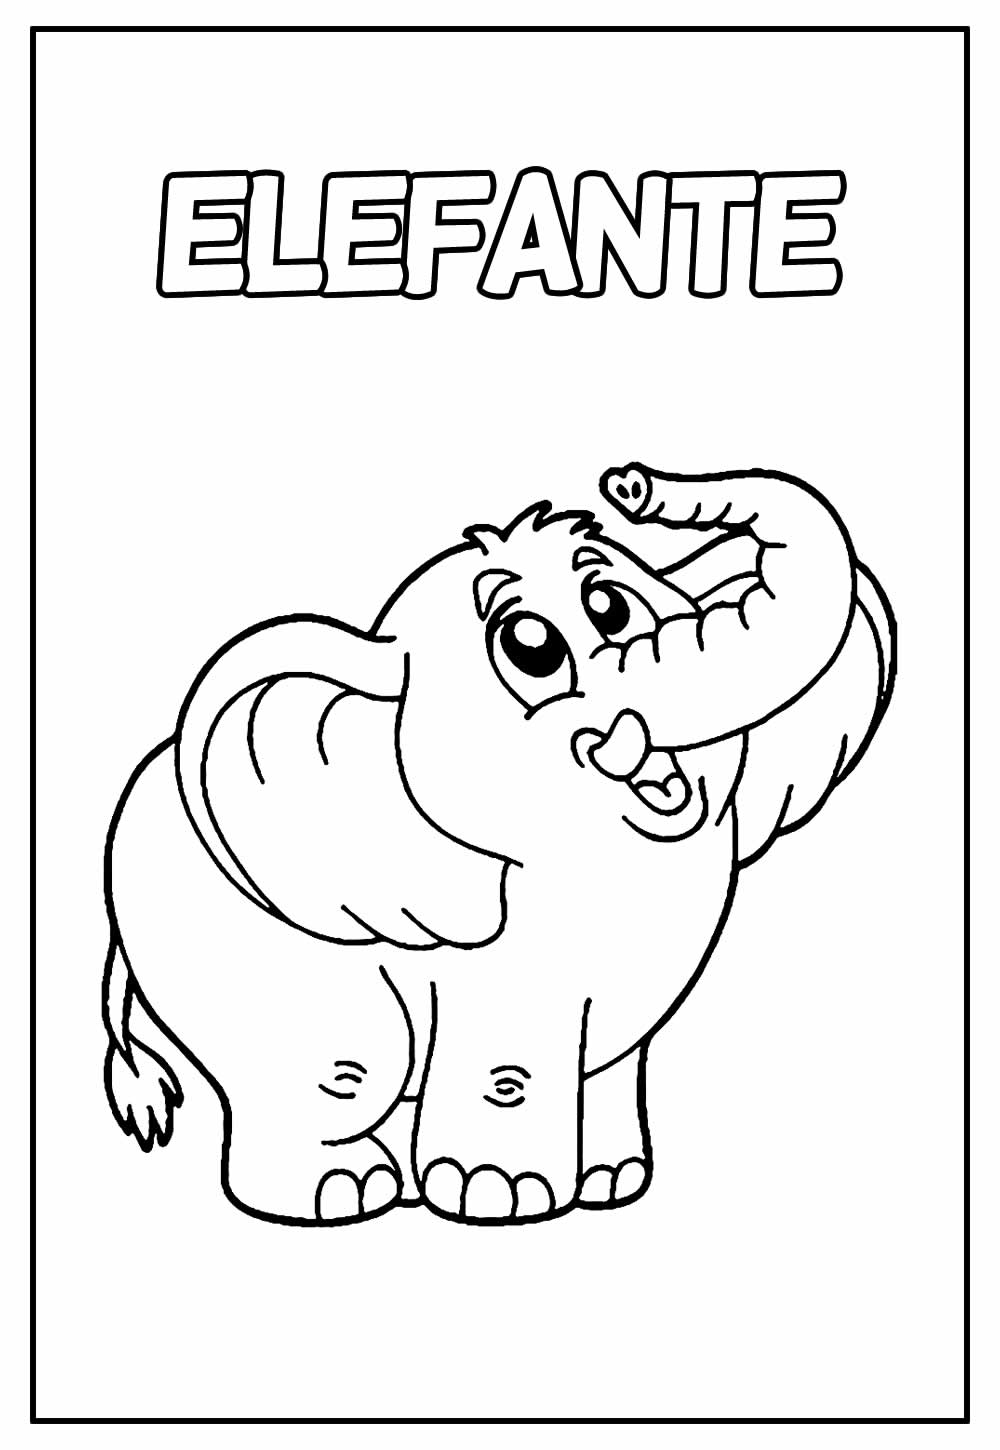 Desenho Educativo de Elefante